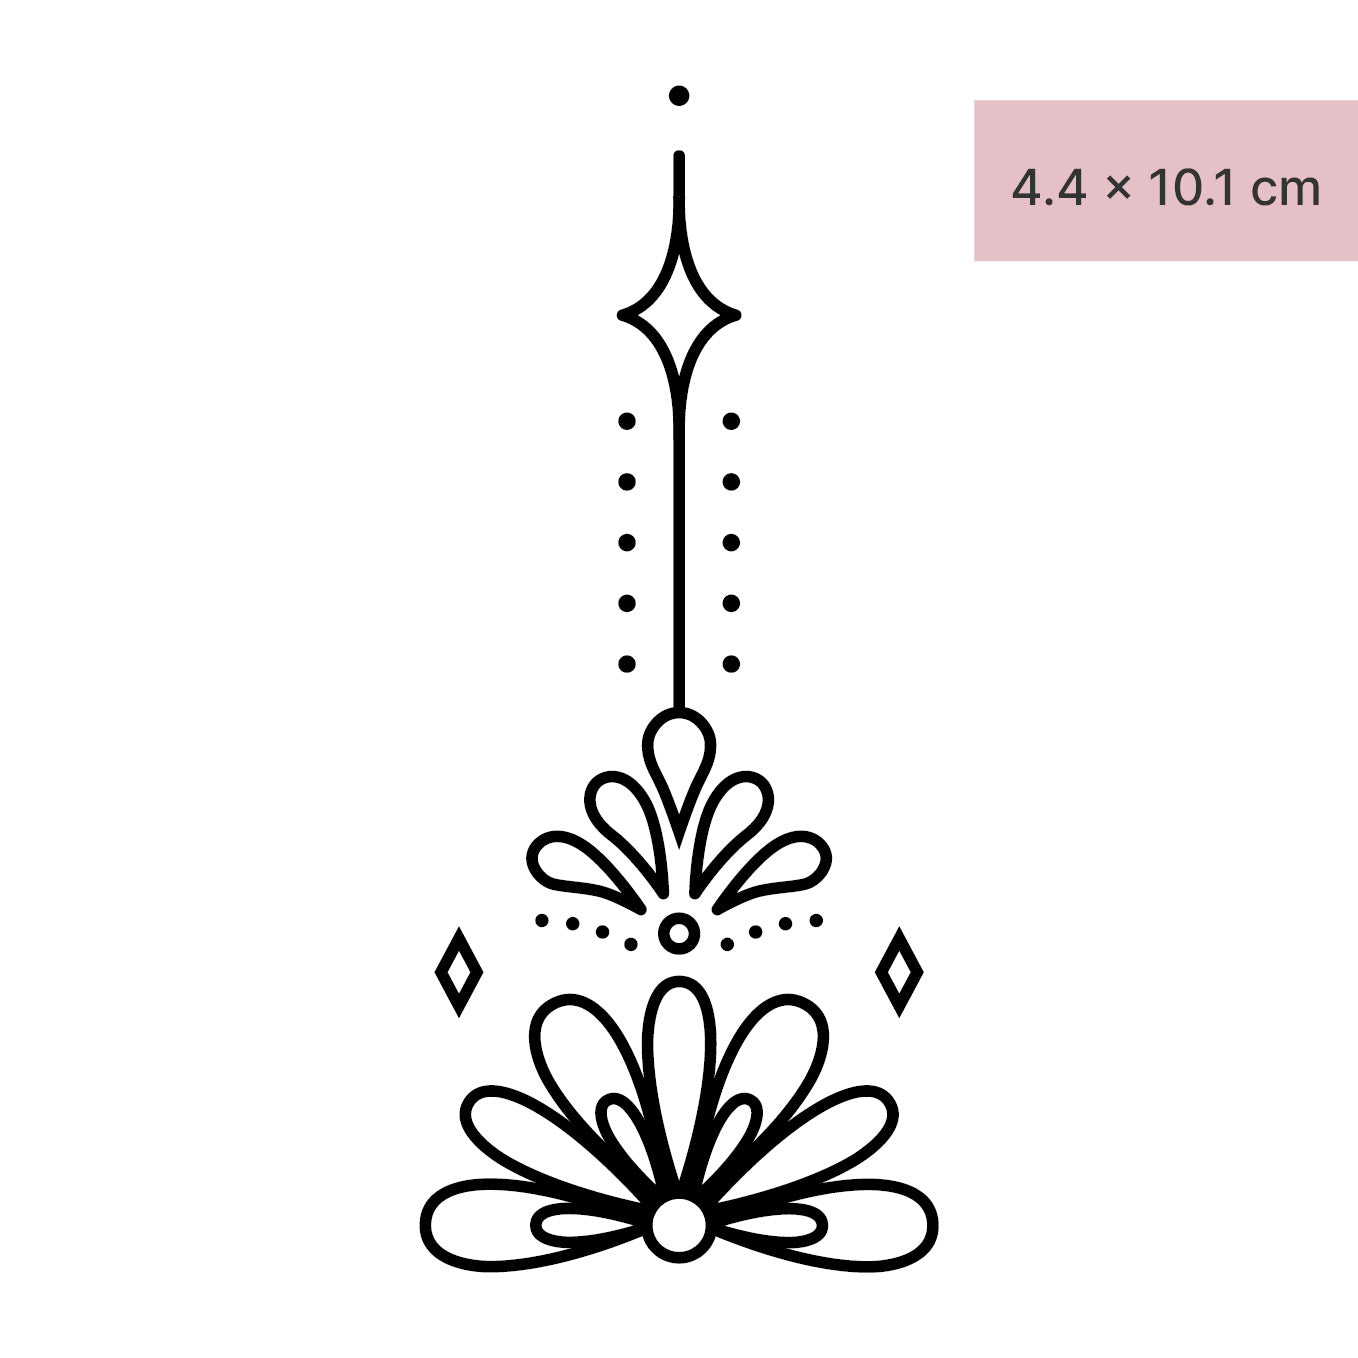 Mandala mit Lotusblumen Tattoo von minink, der Marke für temporäre Tattoos.